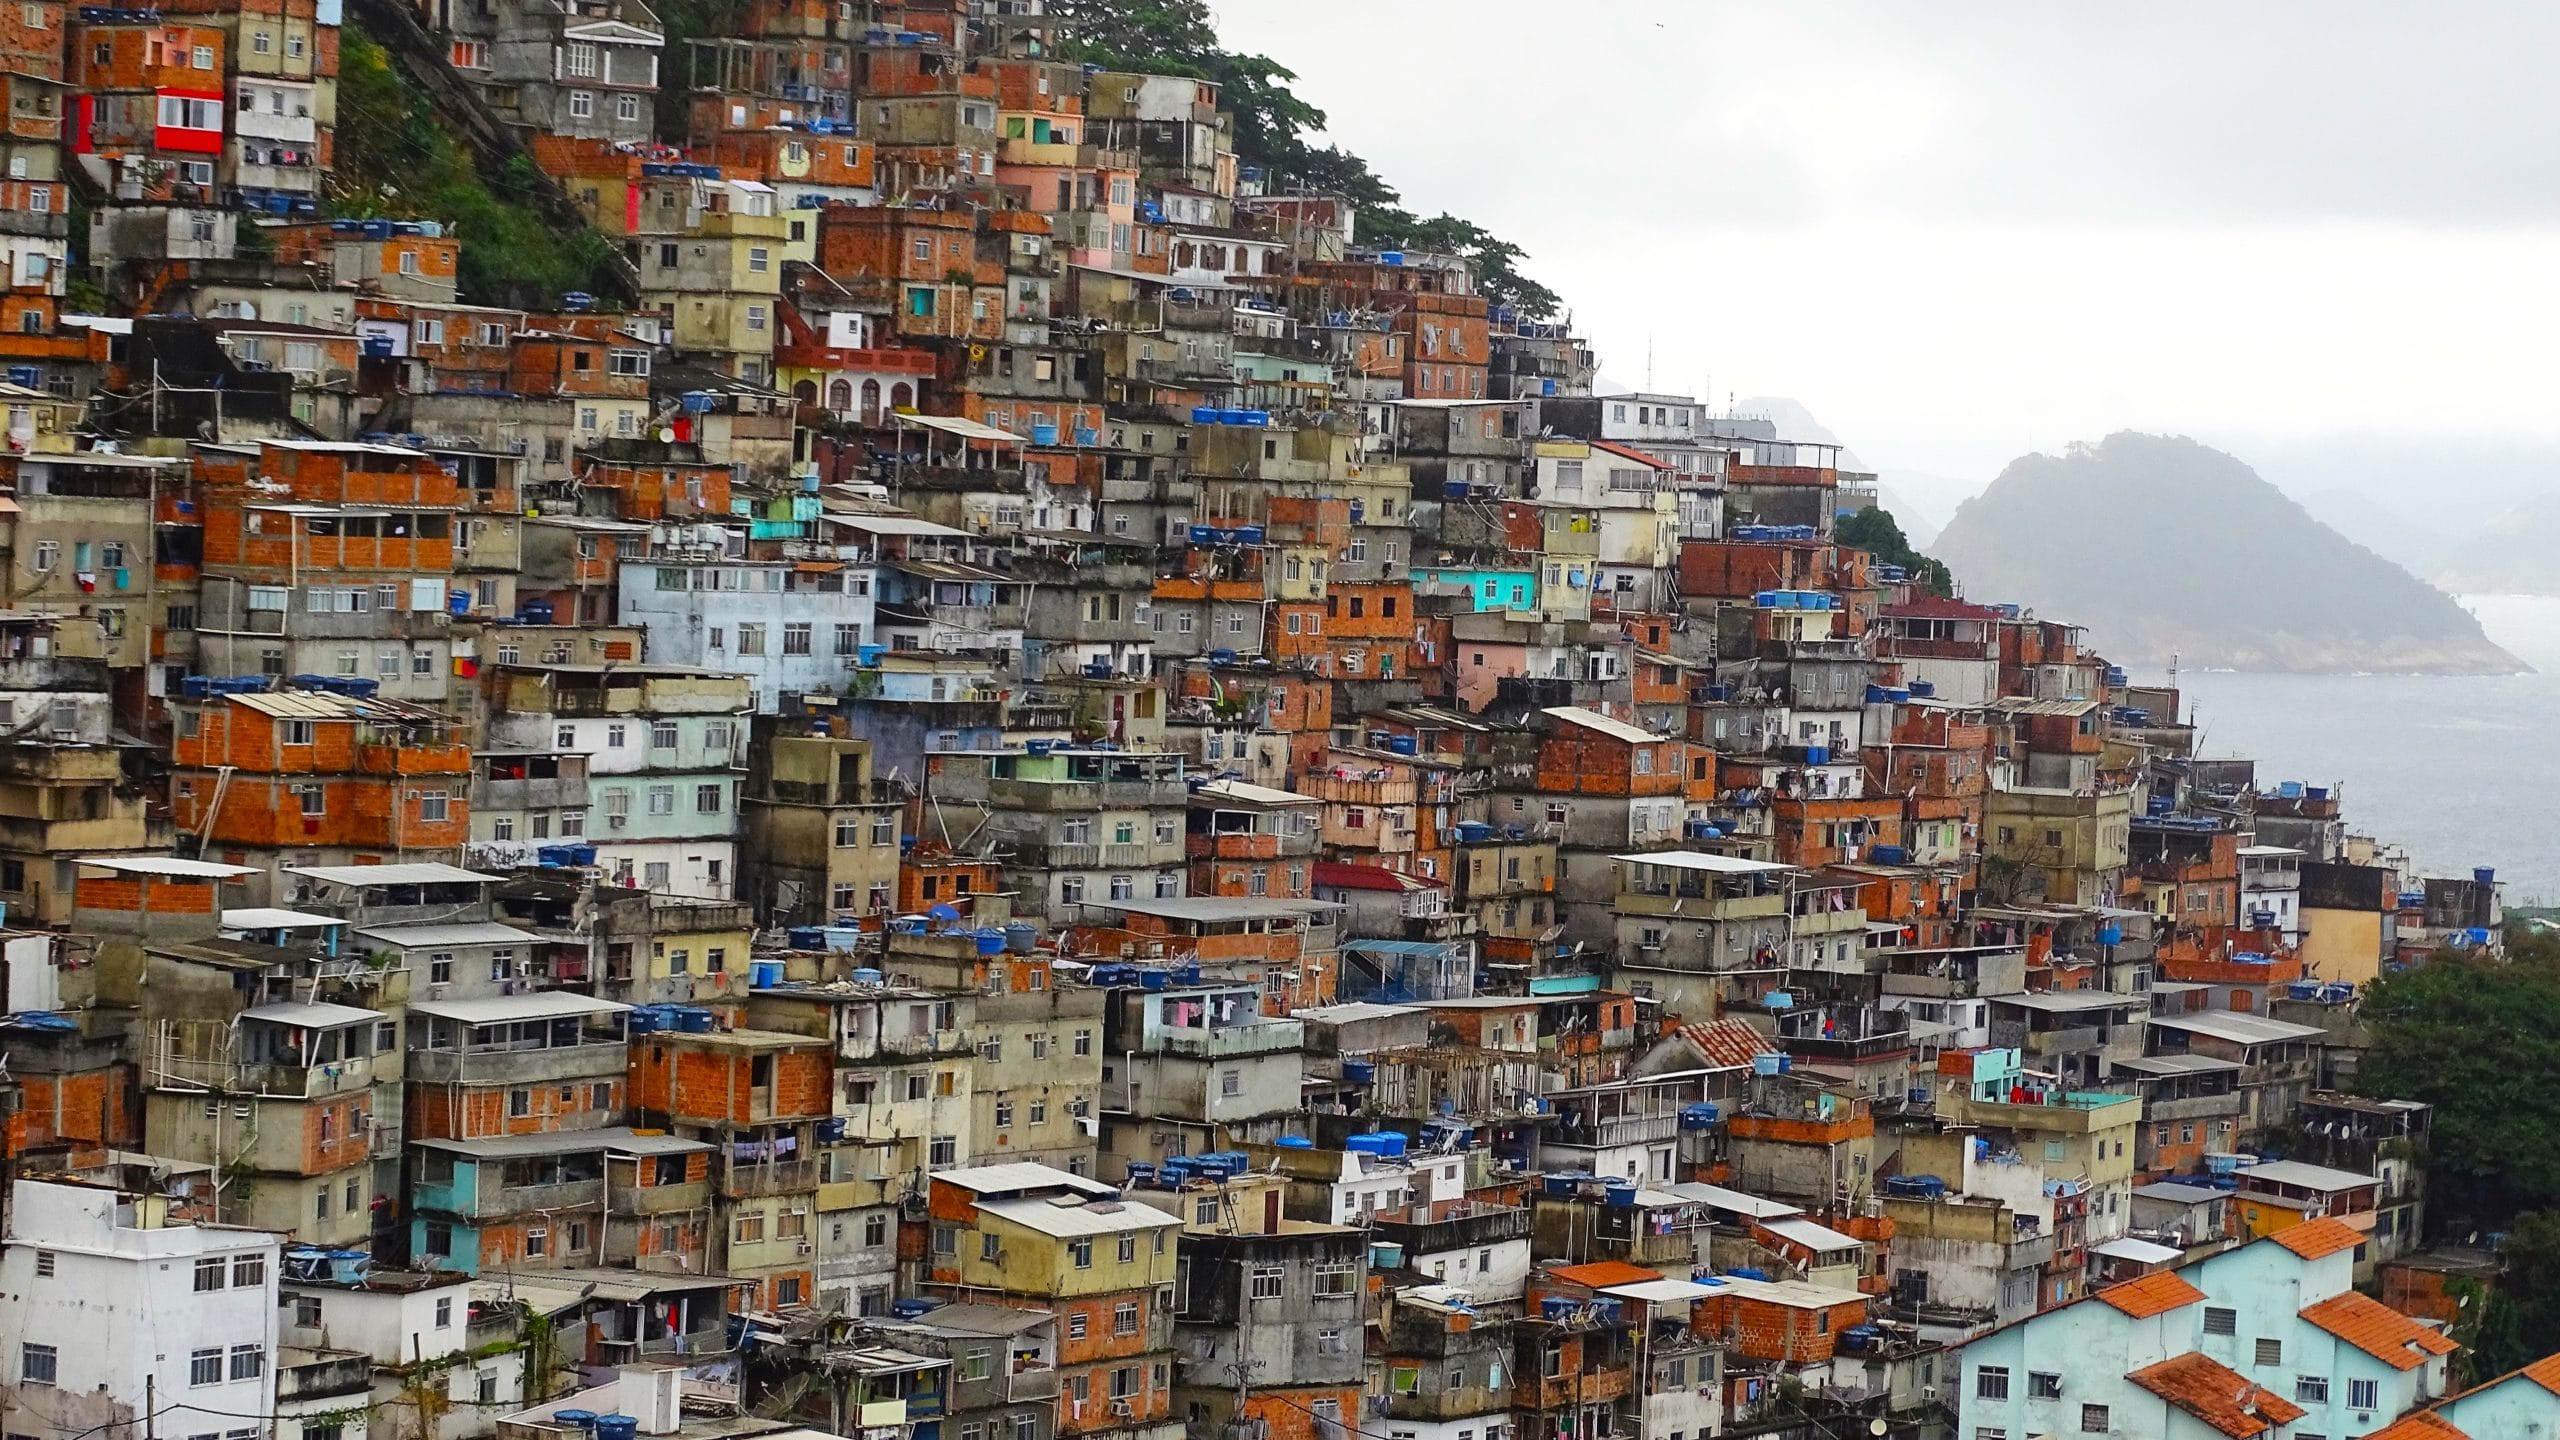 Favela Cantagalo